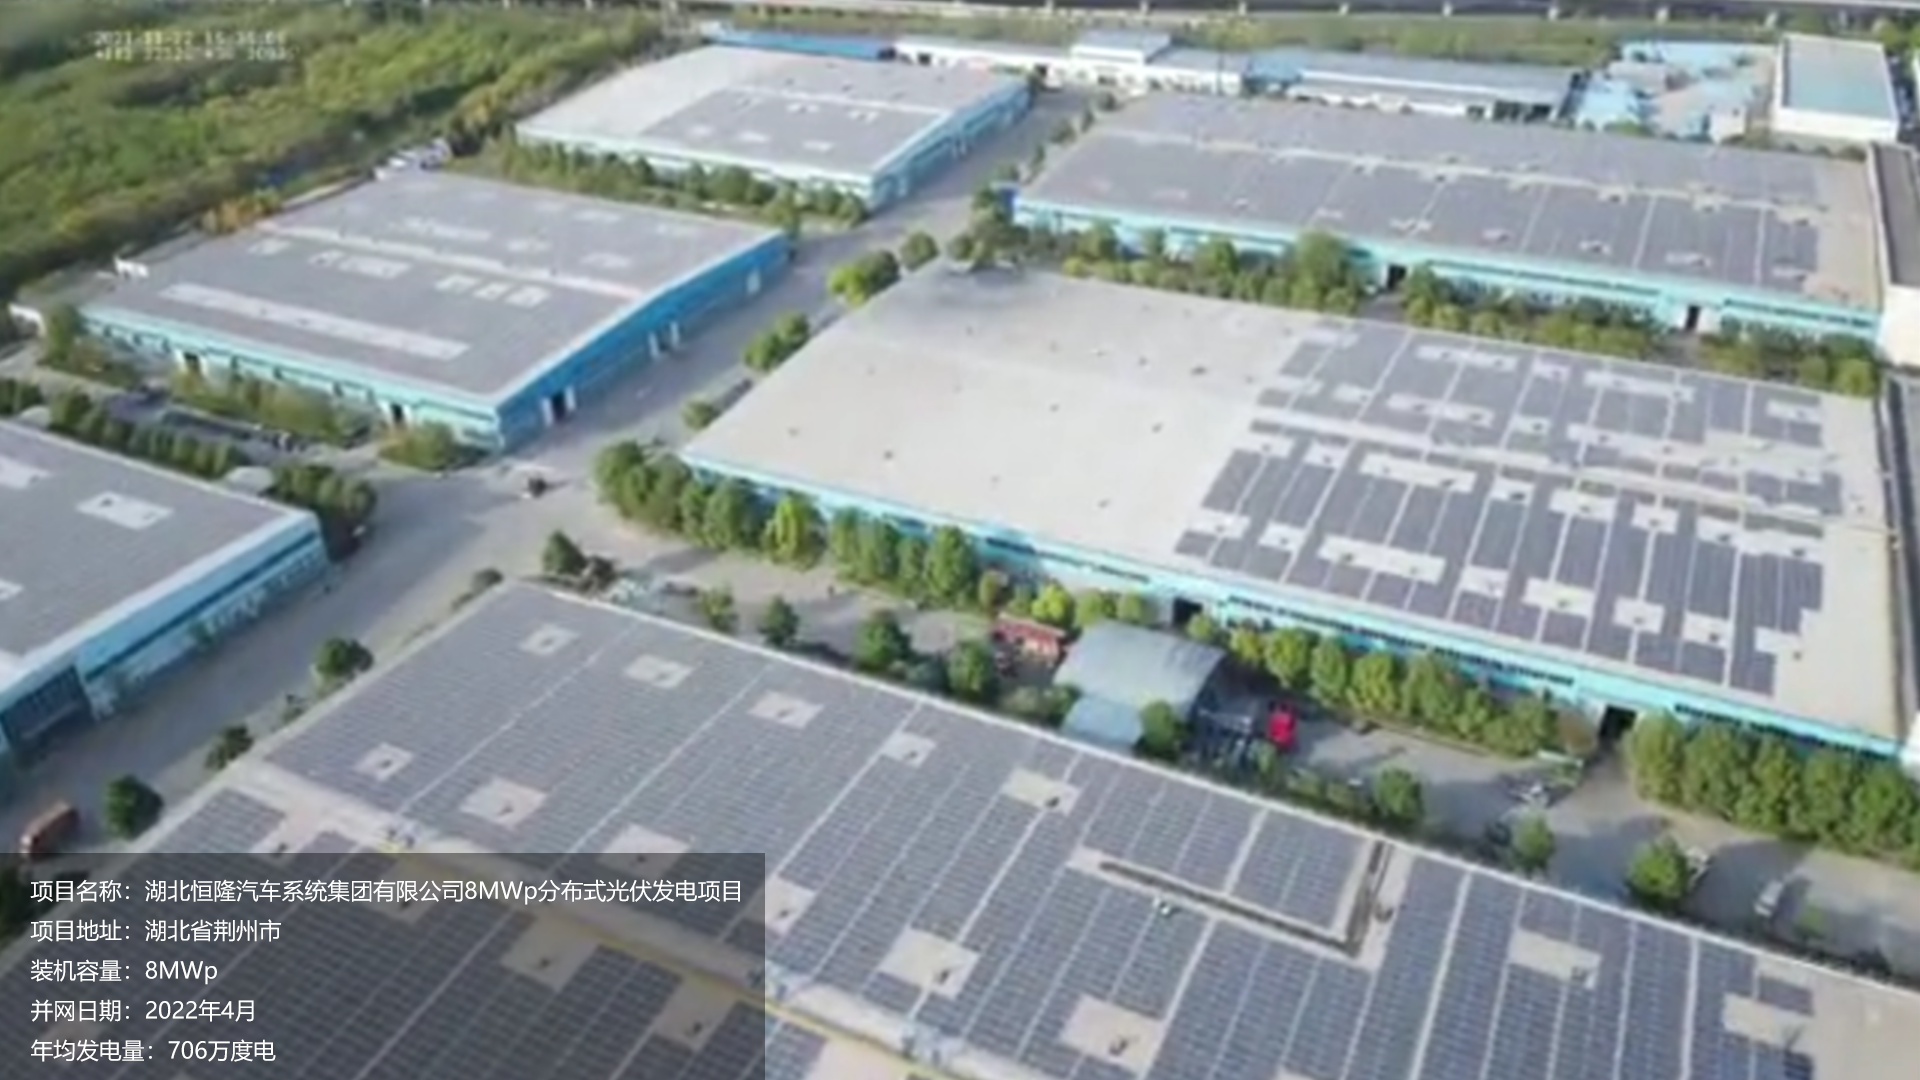 湖北恒隆汽车项目总装机容量8MW，项目位于湖北省荆州市，于2022年4月并网发电，年均发电量约706万度。